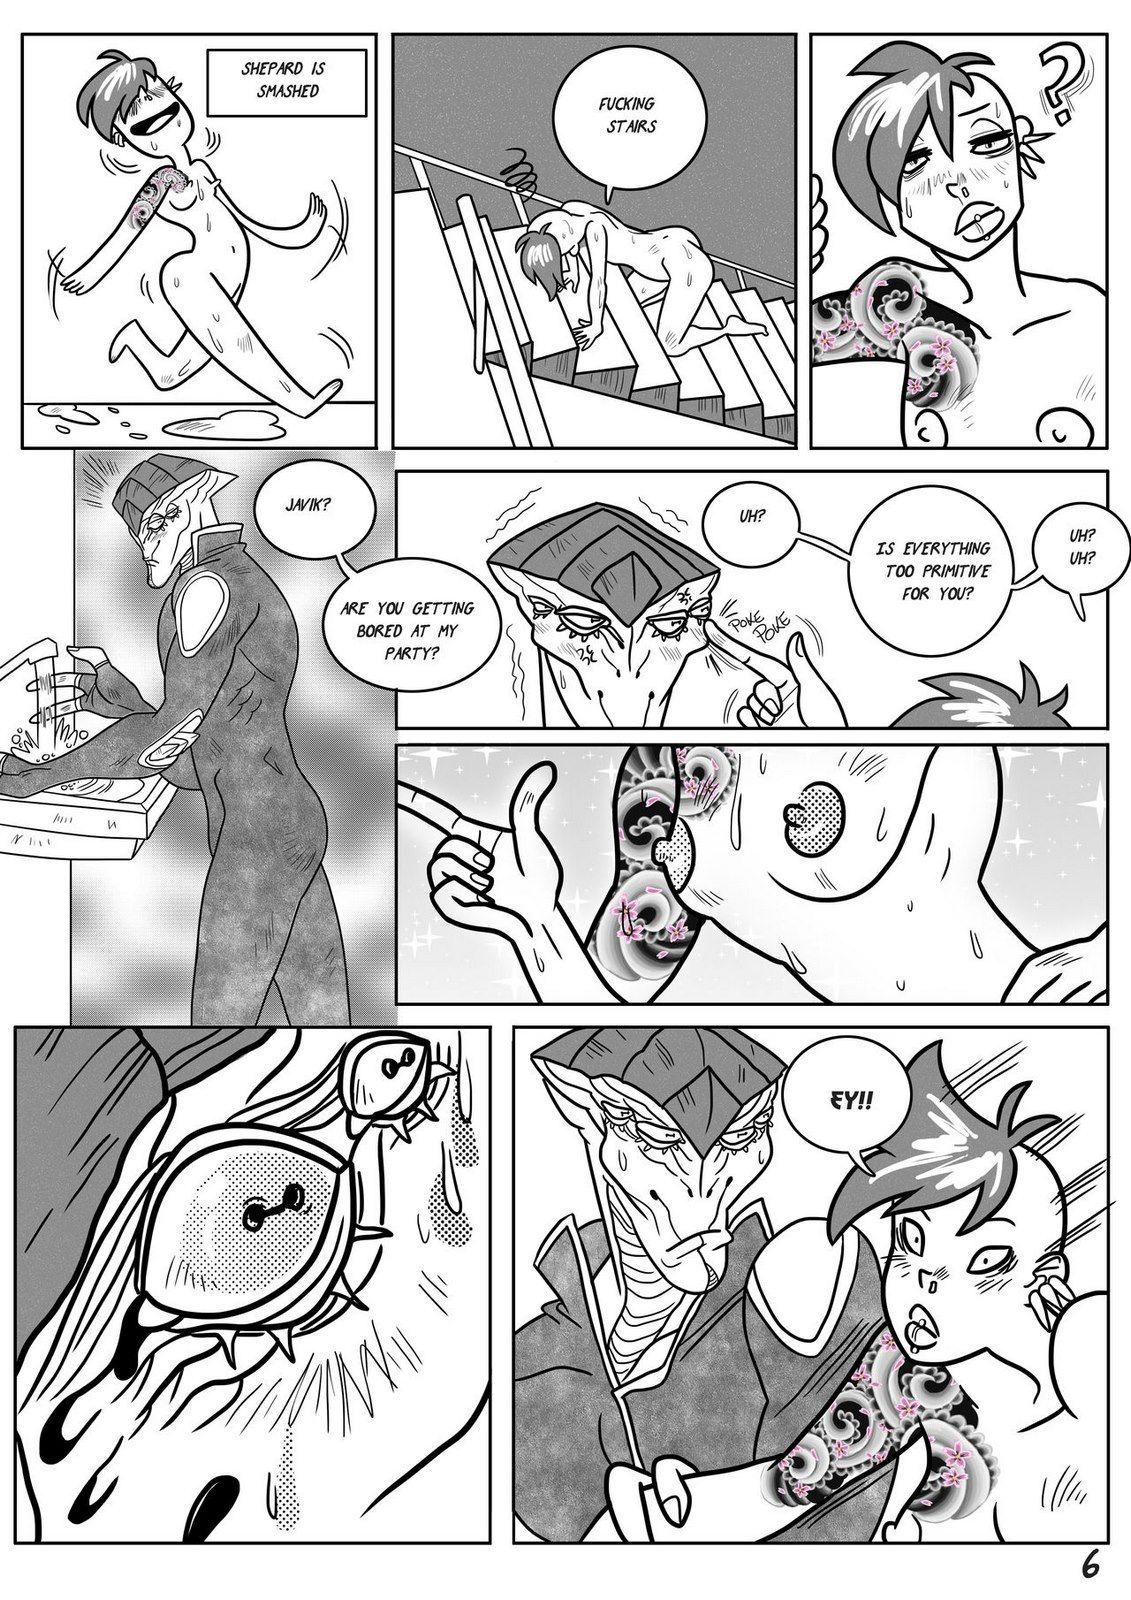 Javik Romance (Mass Effect) by VegaNya page 9